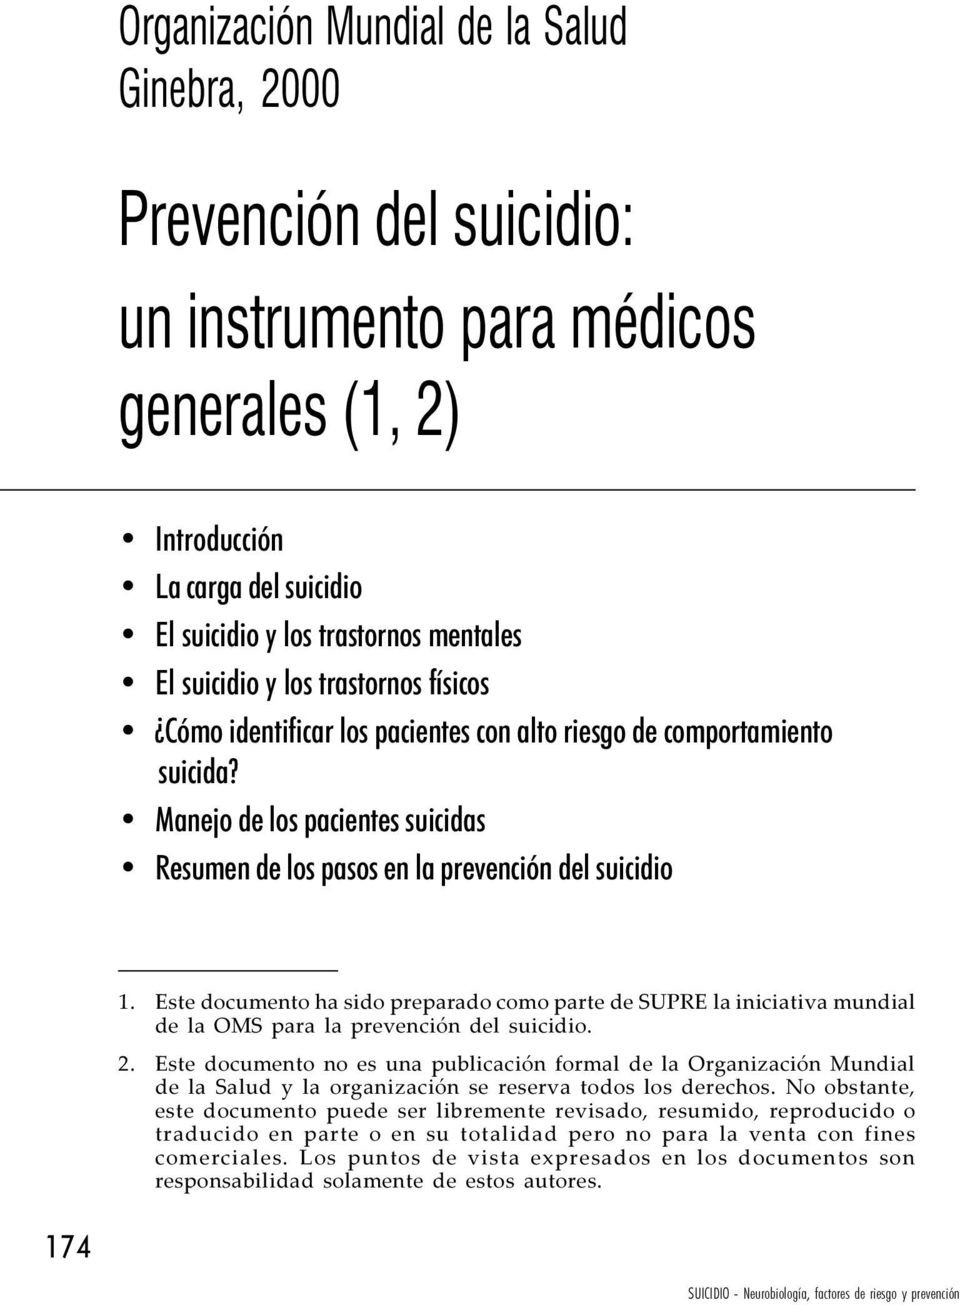 Este documento ha sido preparado como parte de SUPRE la iniciativa mundial de la OMS para la prevención del suicidio. 2.